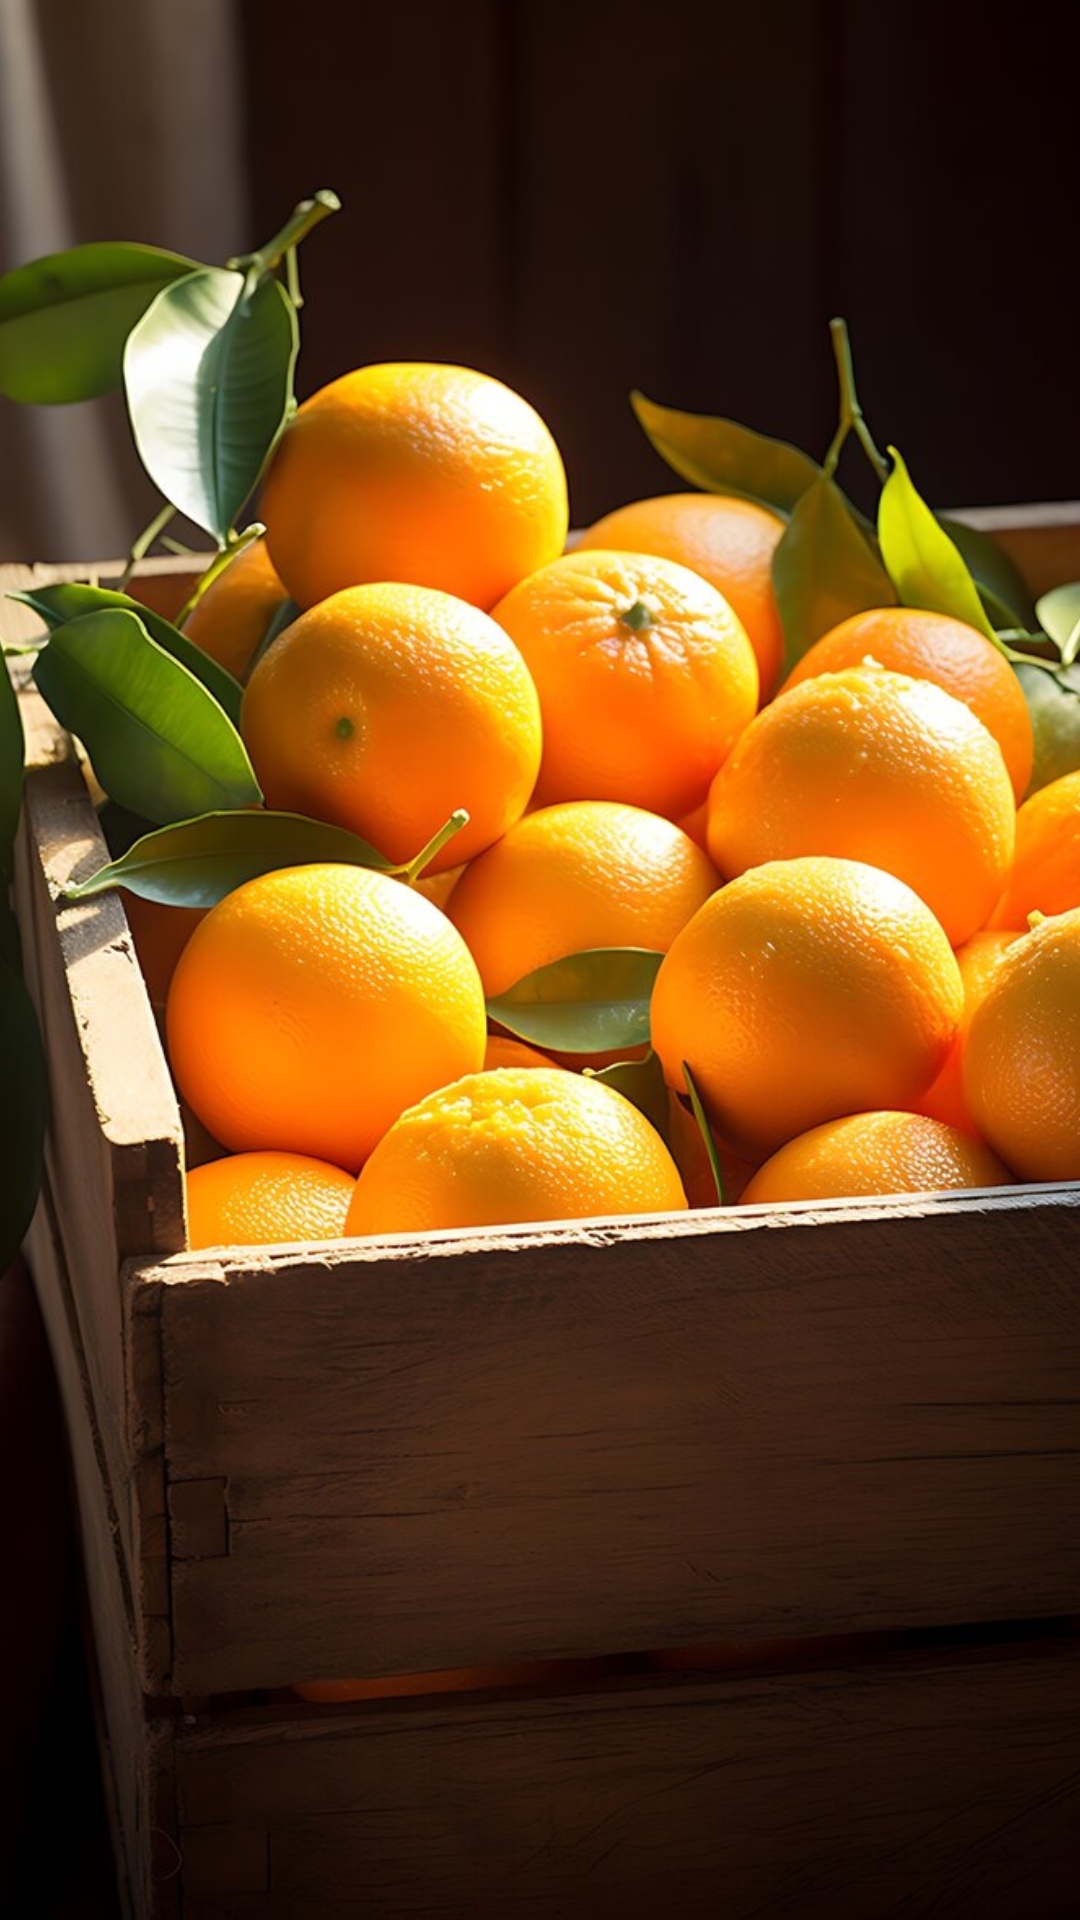 इस वक्त संतरा खाने से मिलते हैं सबसे ज्यादा फायदे